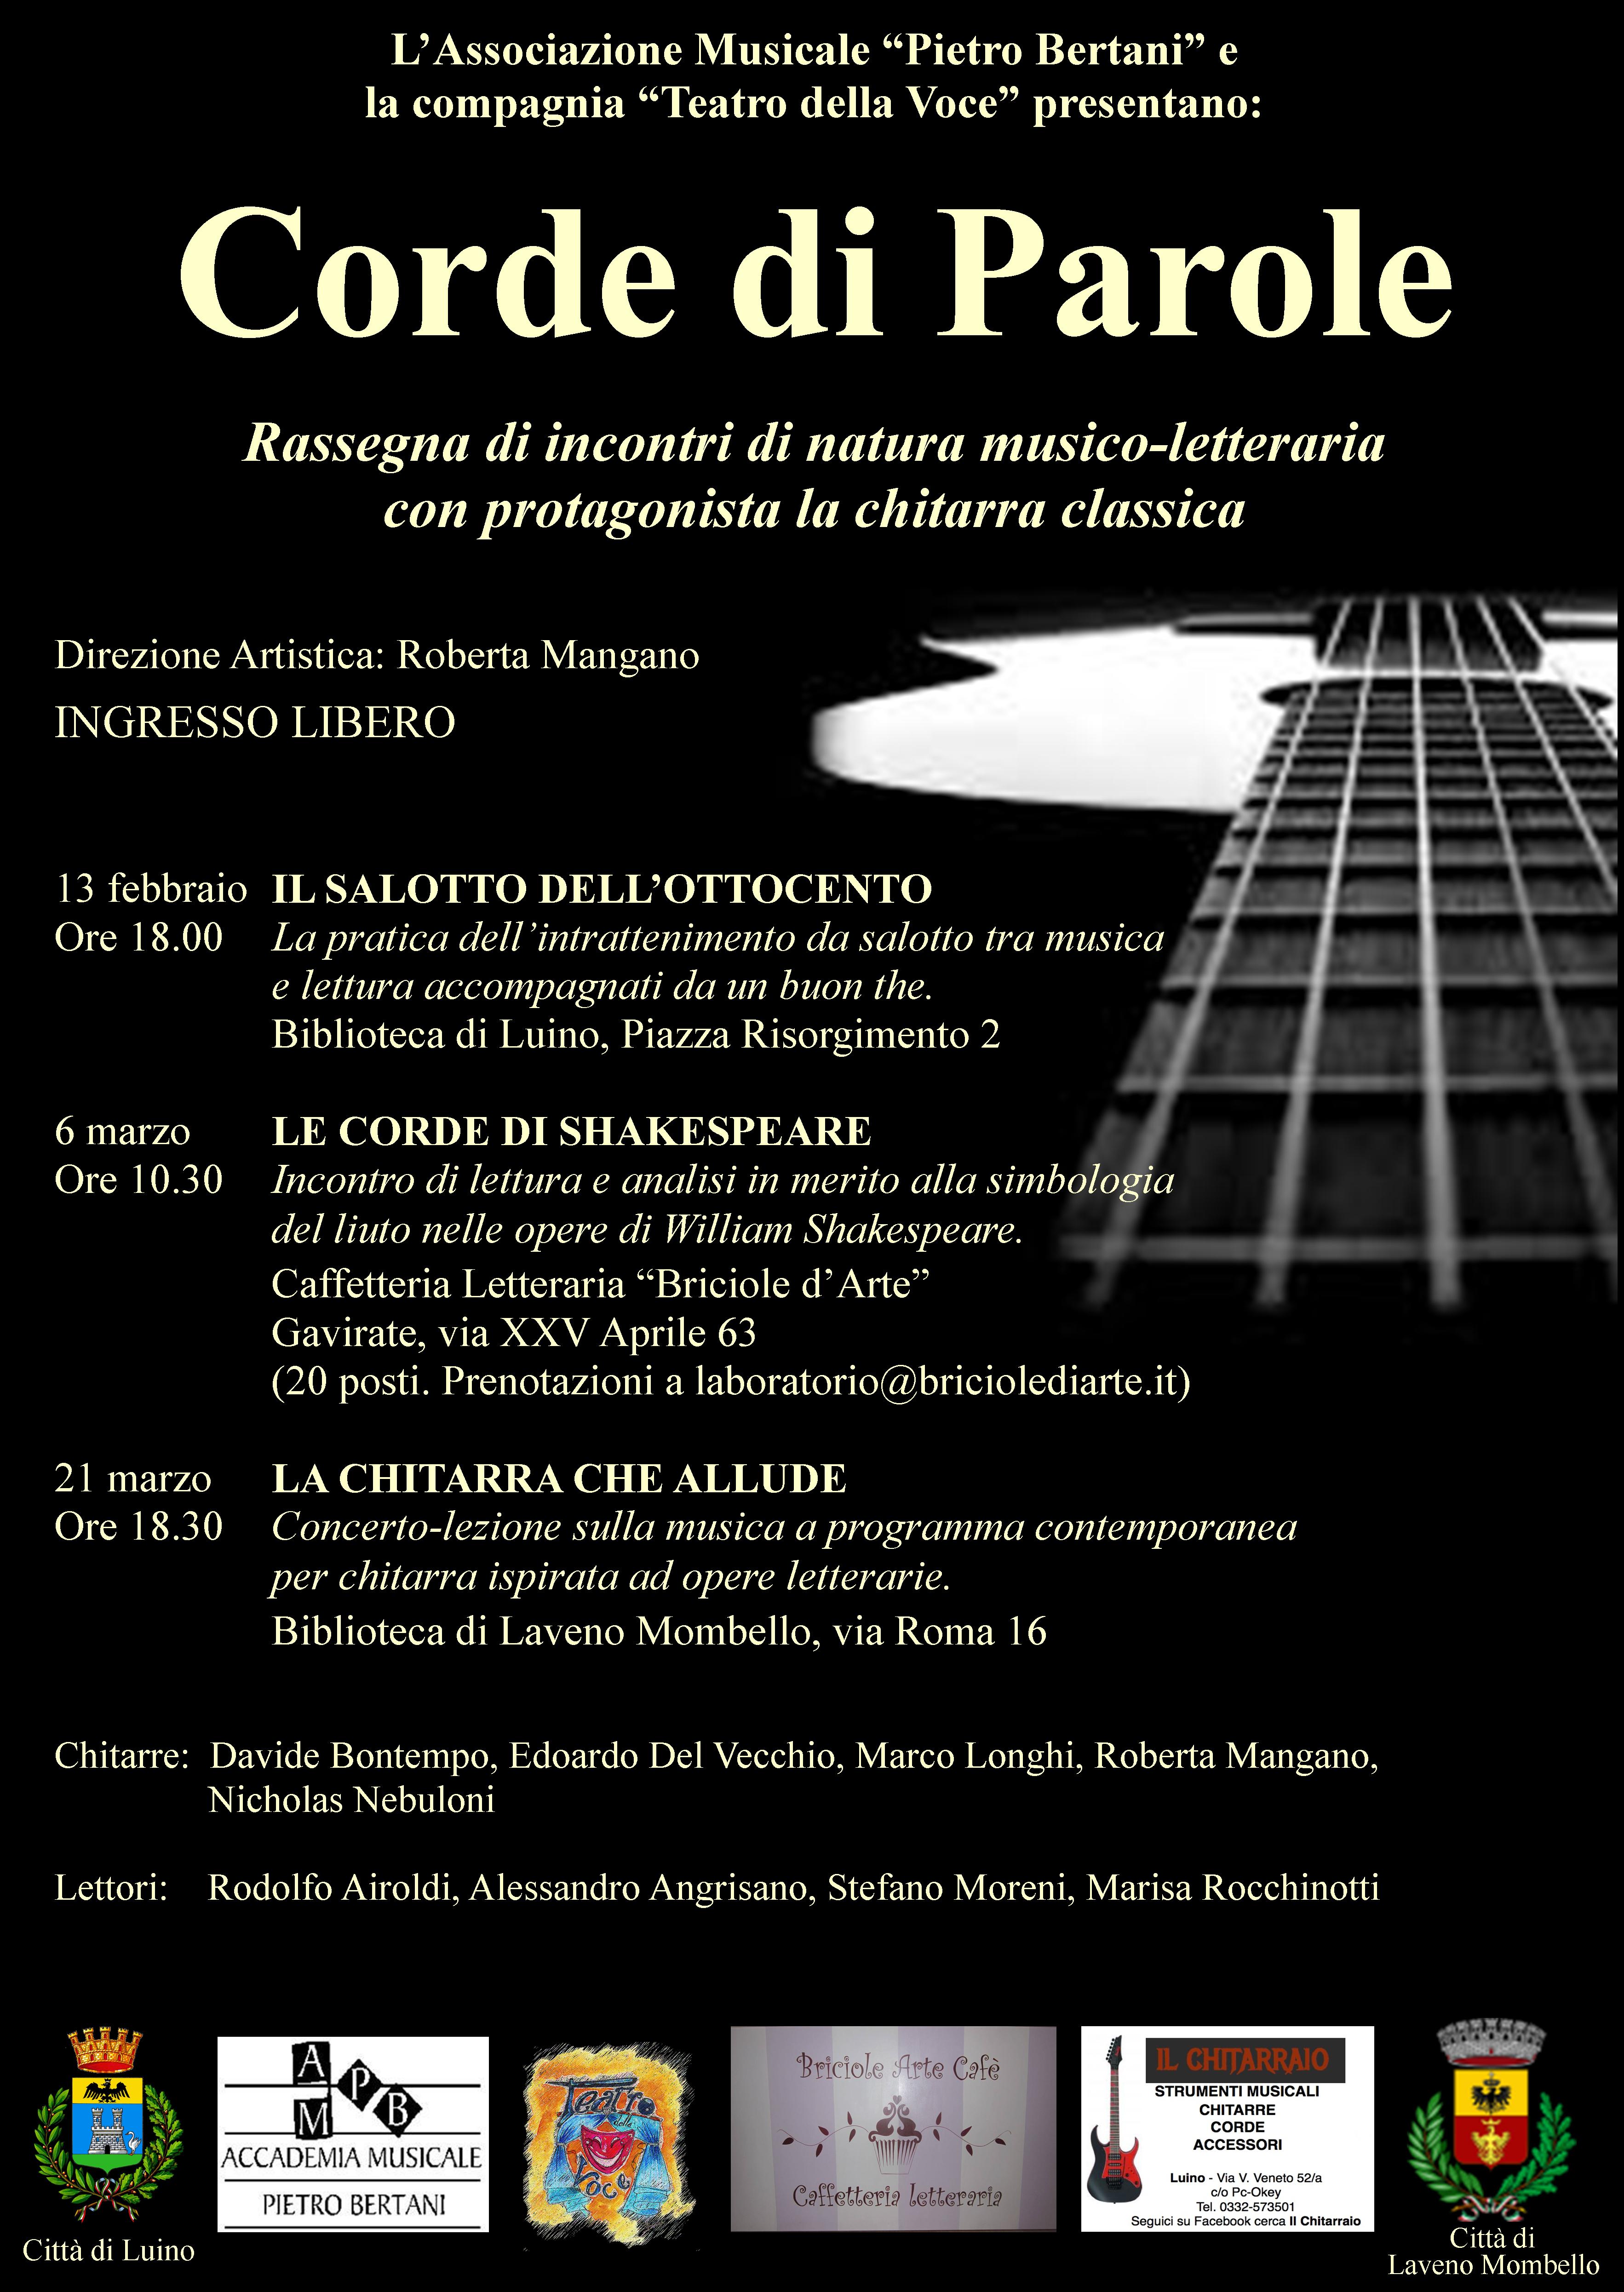 El Mariachi, suonatore di chitarra film completo in italiano download gratuito hd 1080p